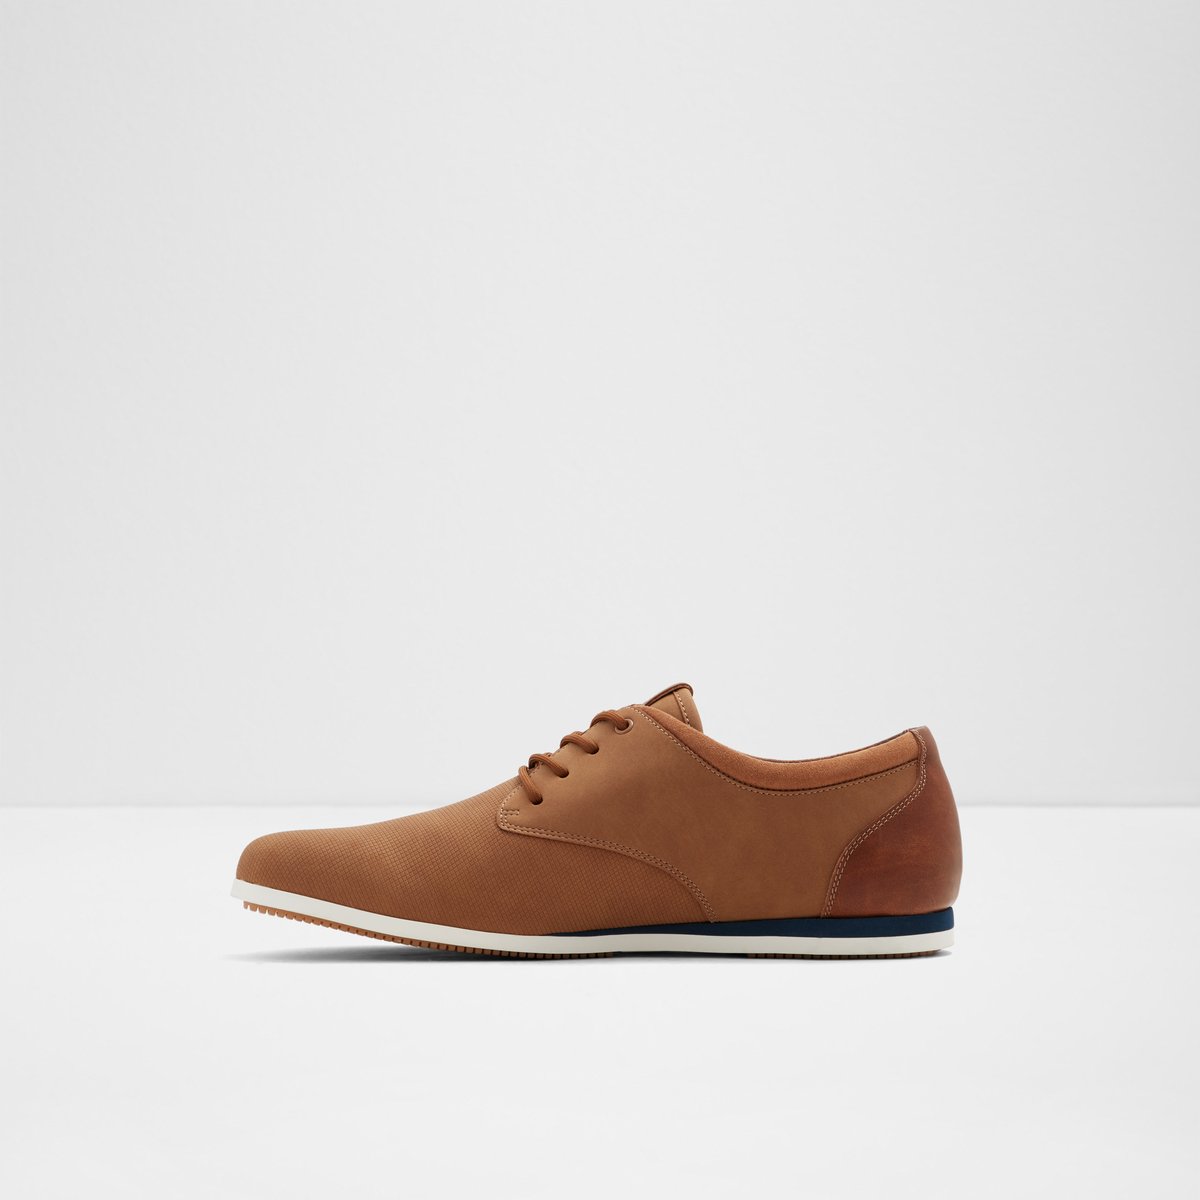 Aauwen-r Brown Synthetic Men's Sneakers | ALDO